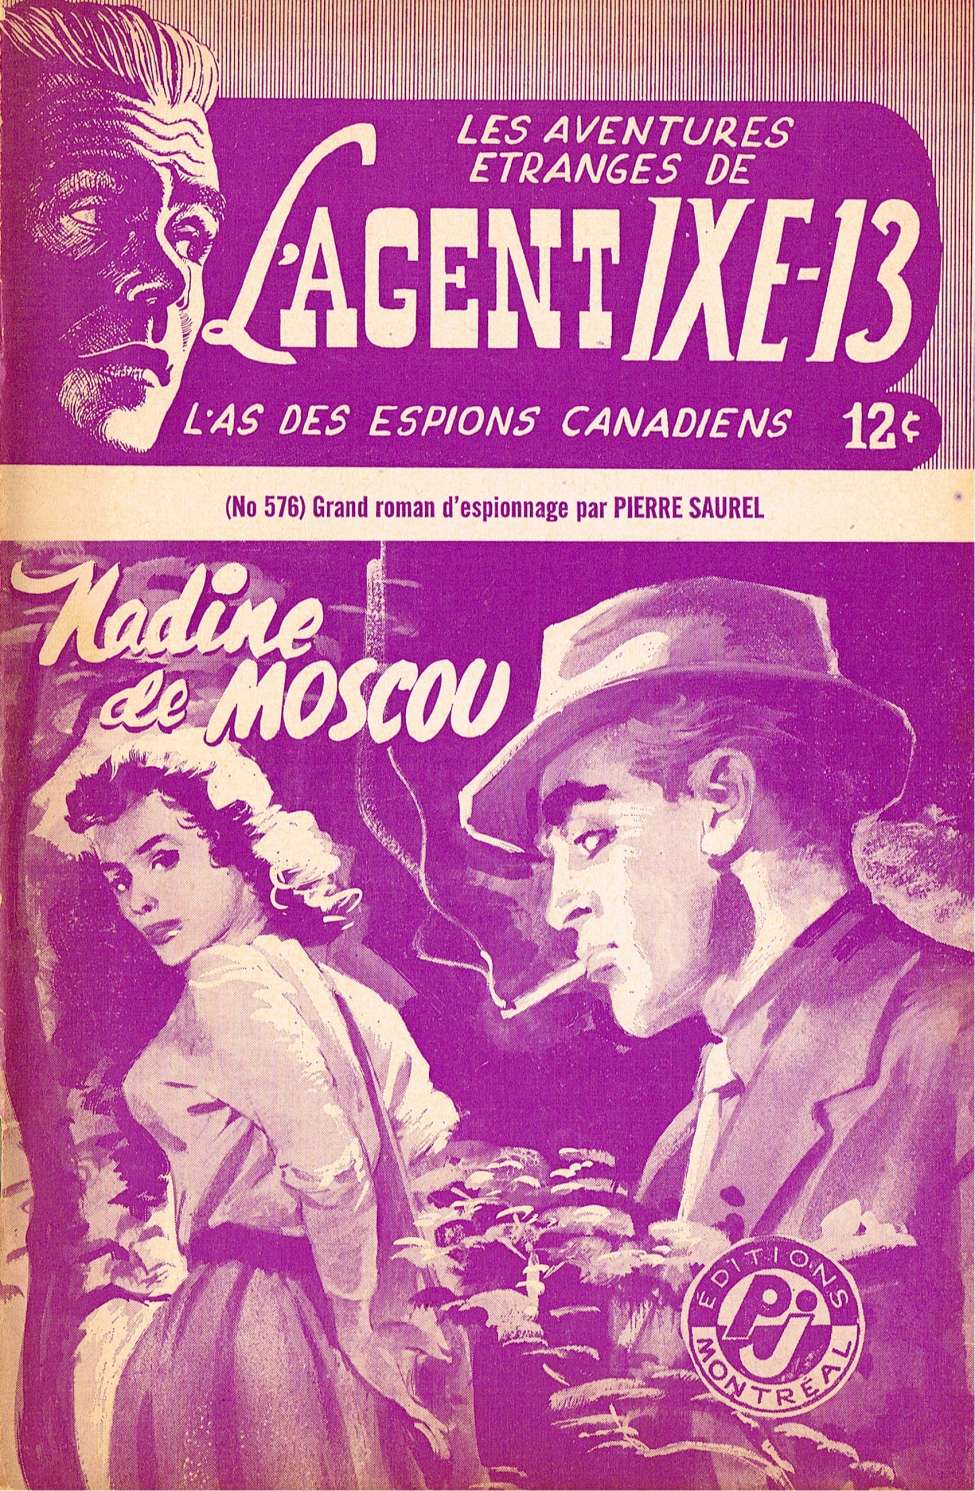 Book Cover For L'Agent IXE-13 v2 576 - Nadine de Moscou